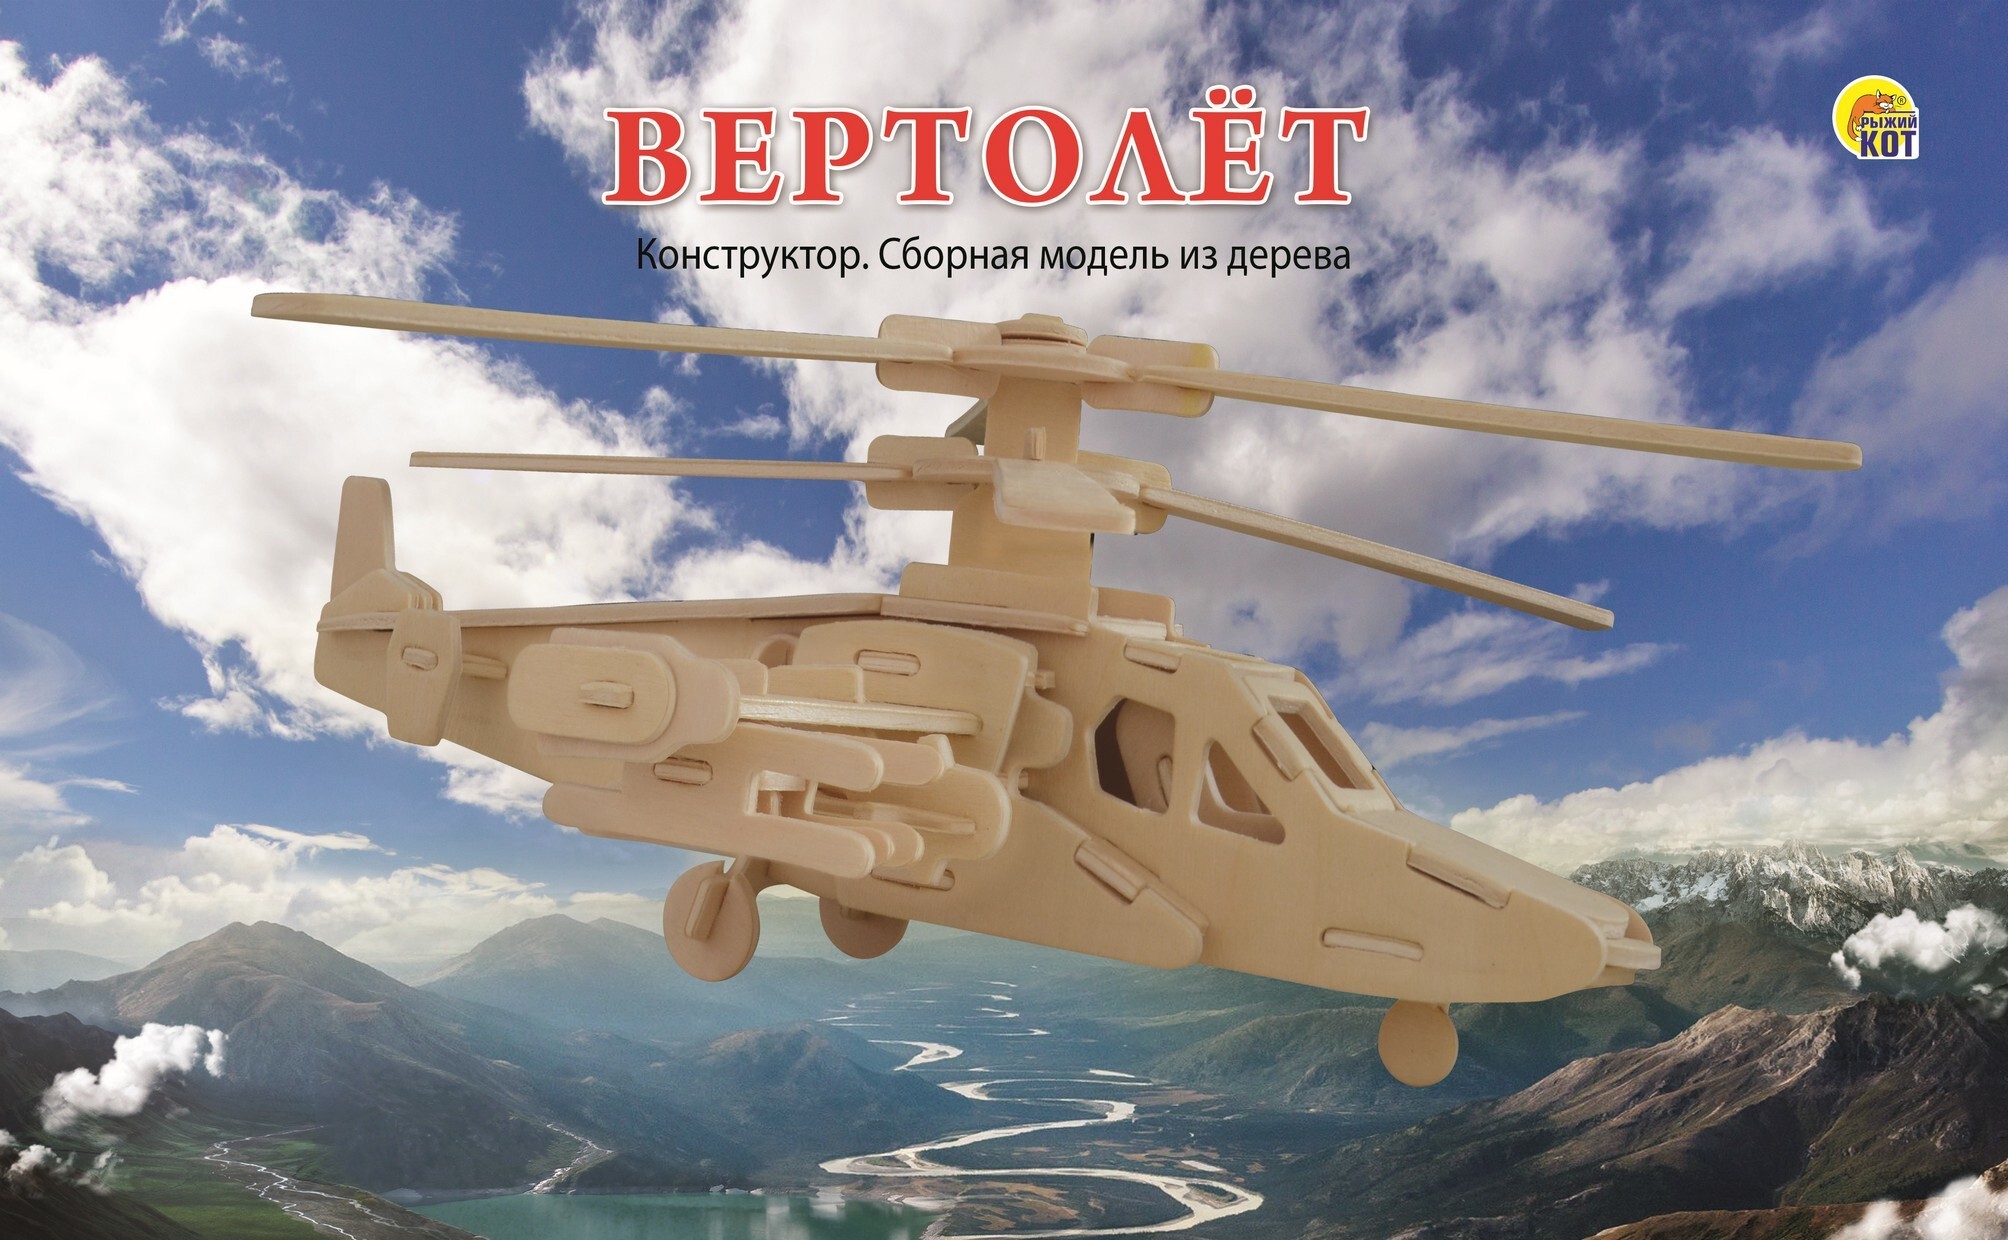 Котики вертолетики купить. Сборная модель из дерева. 2 Big вертолет (арт. См-1002-а4) см-1002-а4. Деревянная модель вертолета. Сборная модель из дерева. Деревянный конструктор вертолет.